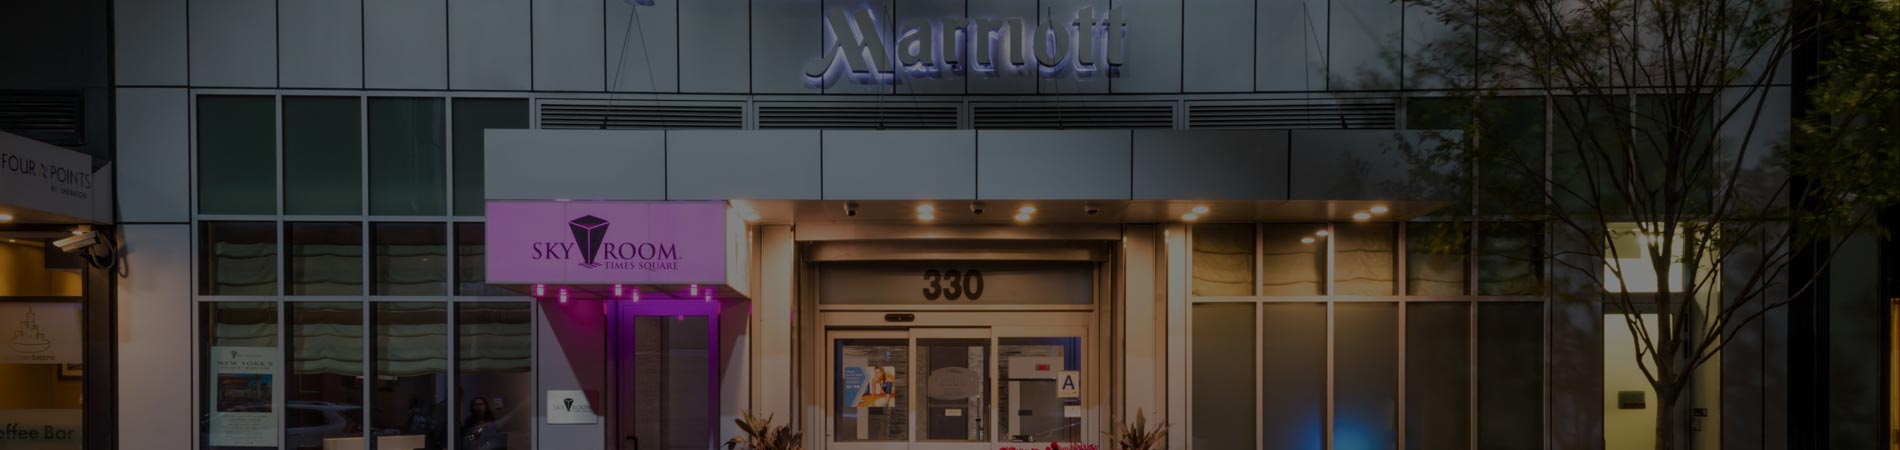 Courtyard Marriott Nashville